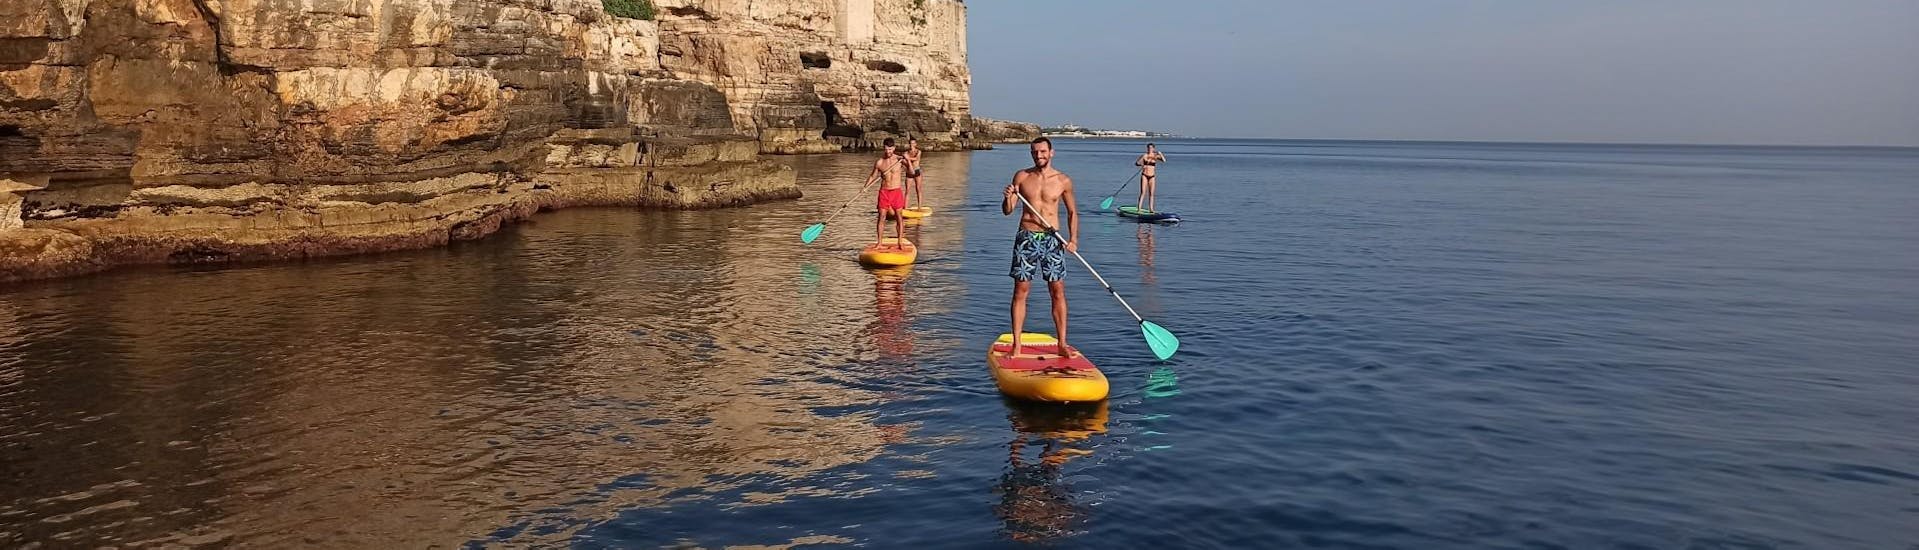 Un gruppo di amici che si diverte con lo Stand Up Paddle Tour alle Grotte di Polignano a Mare.